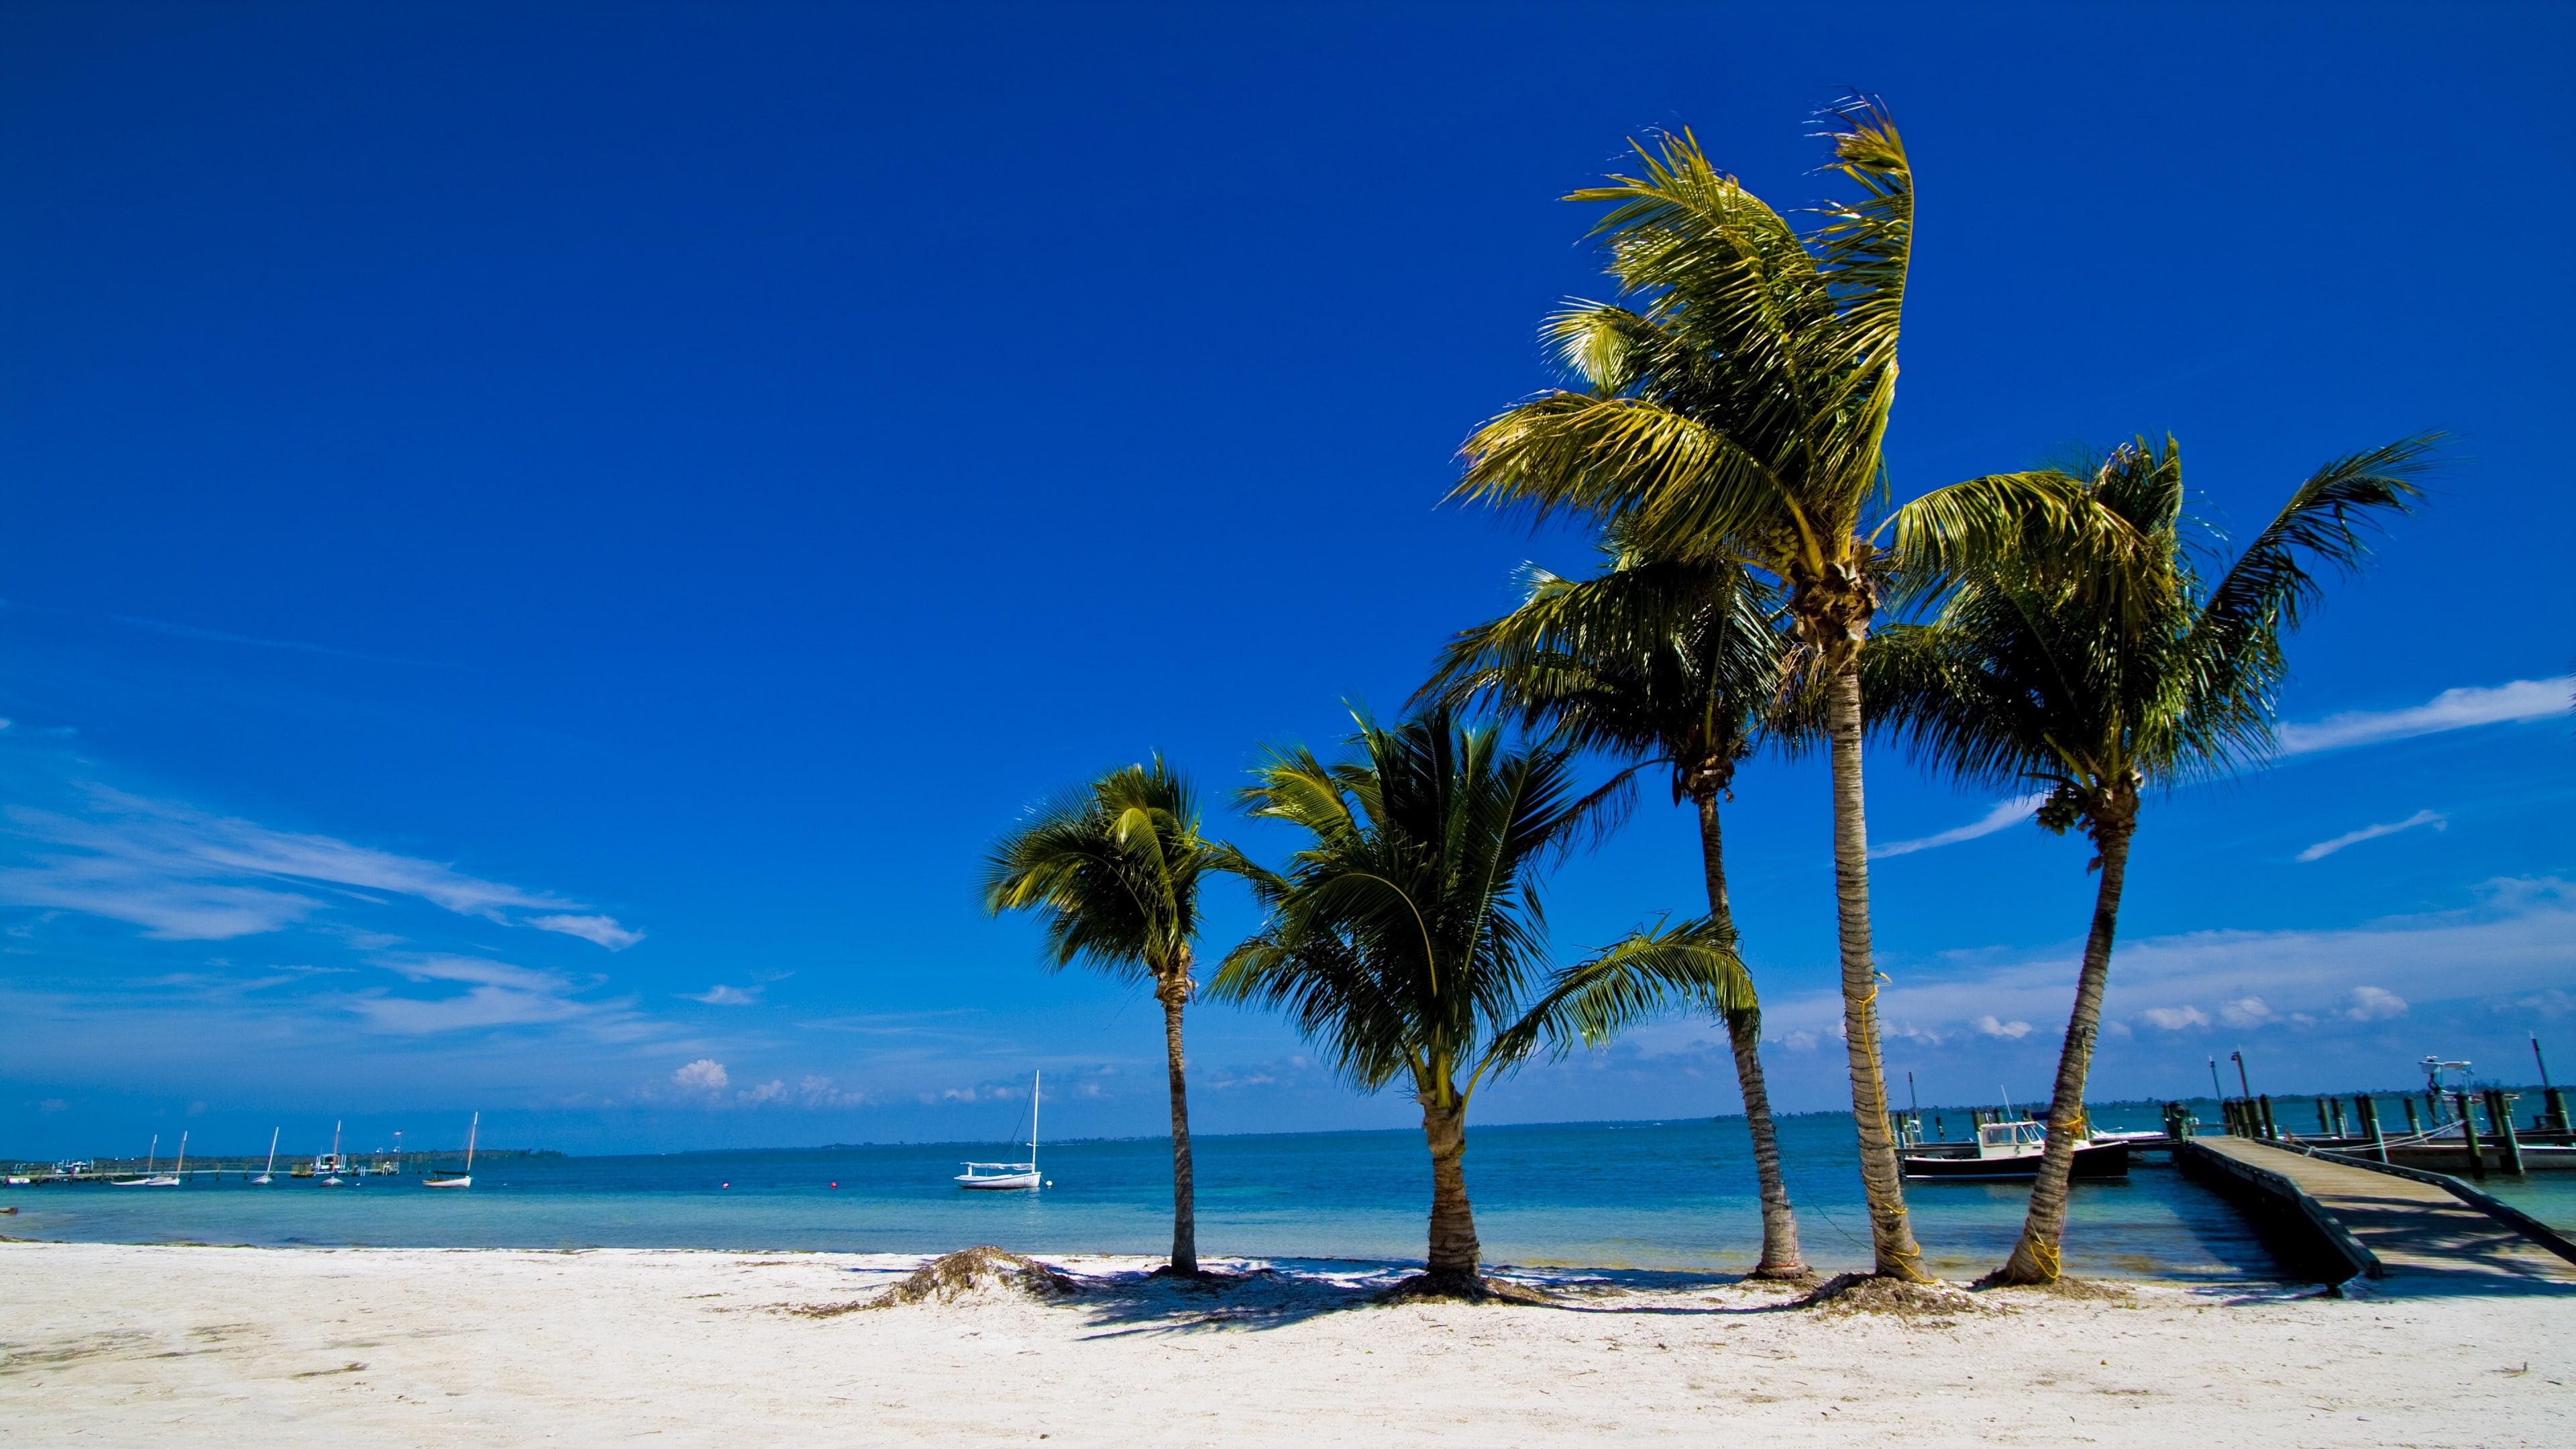 tropics, vacation, coast, ocean, shore, palm tree, sunny day